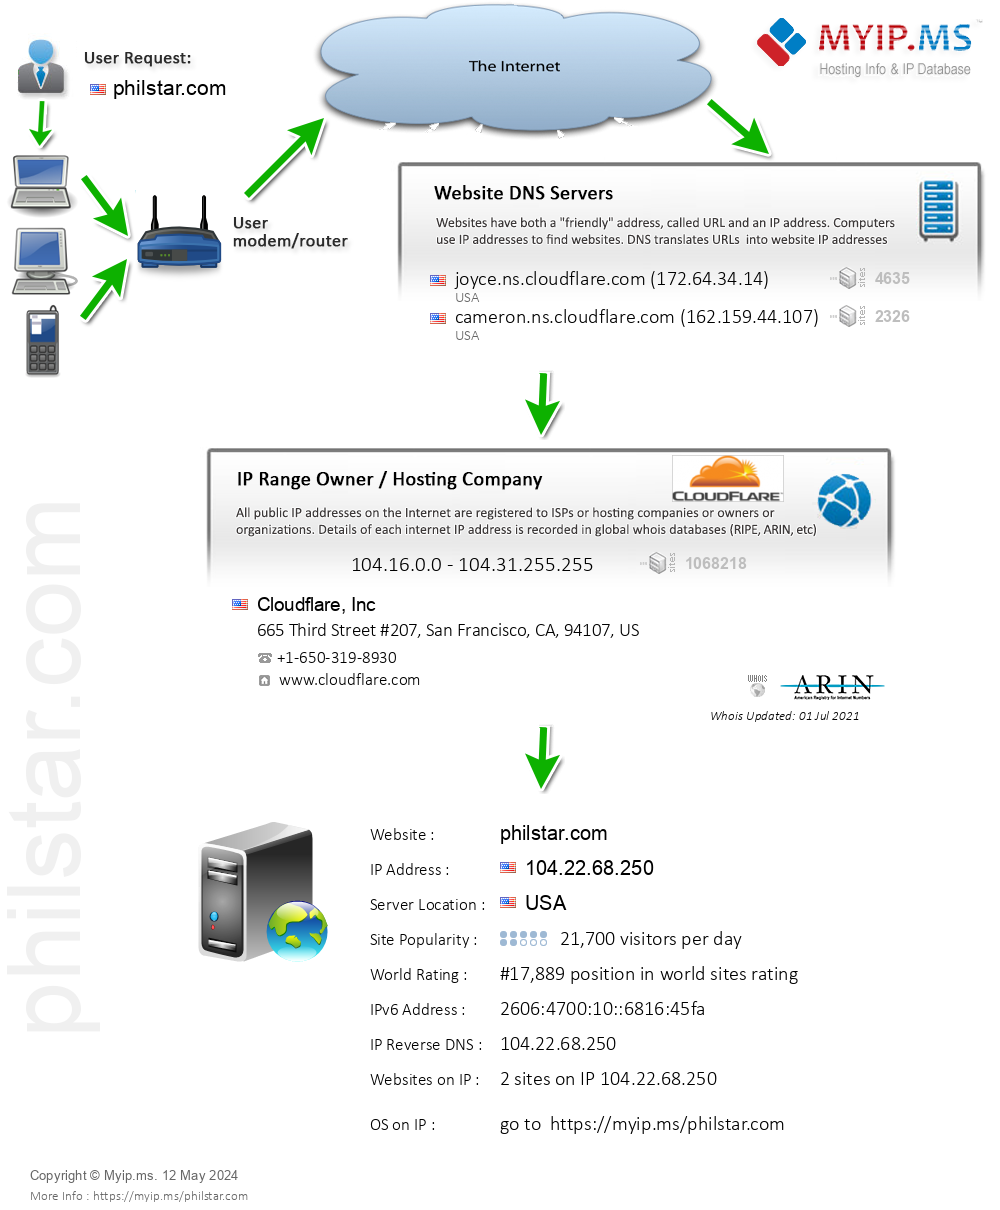 Philstar.com - Website Hosting Visual IP Diagram